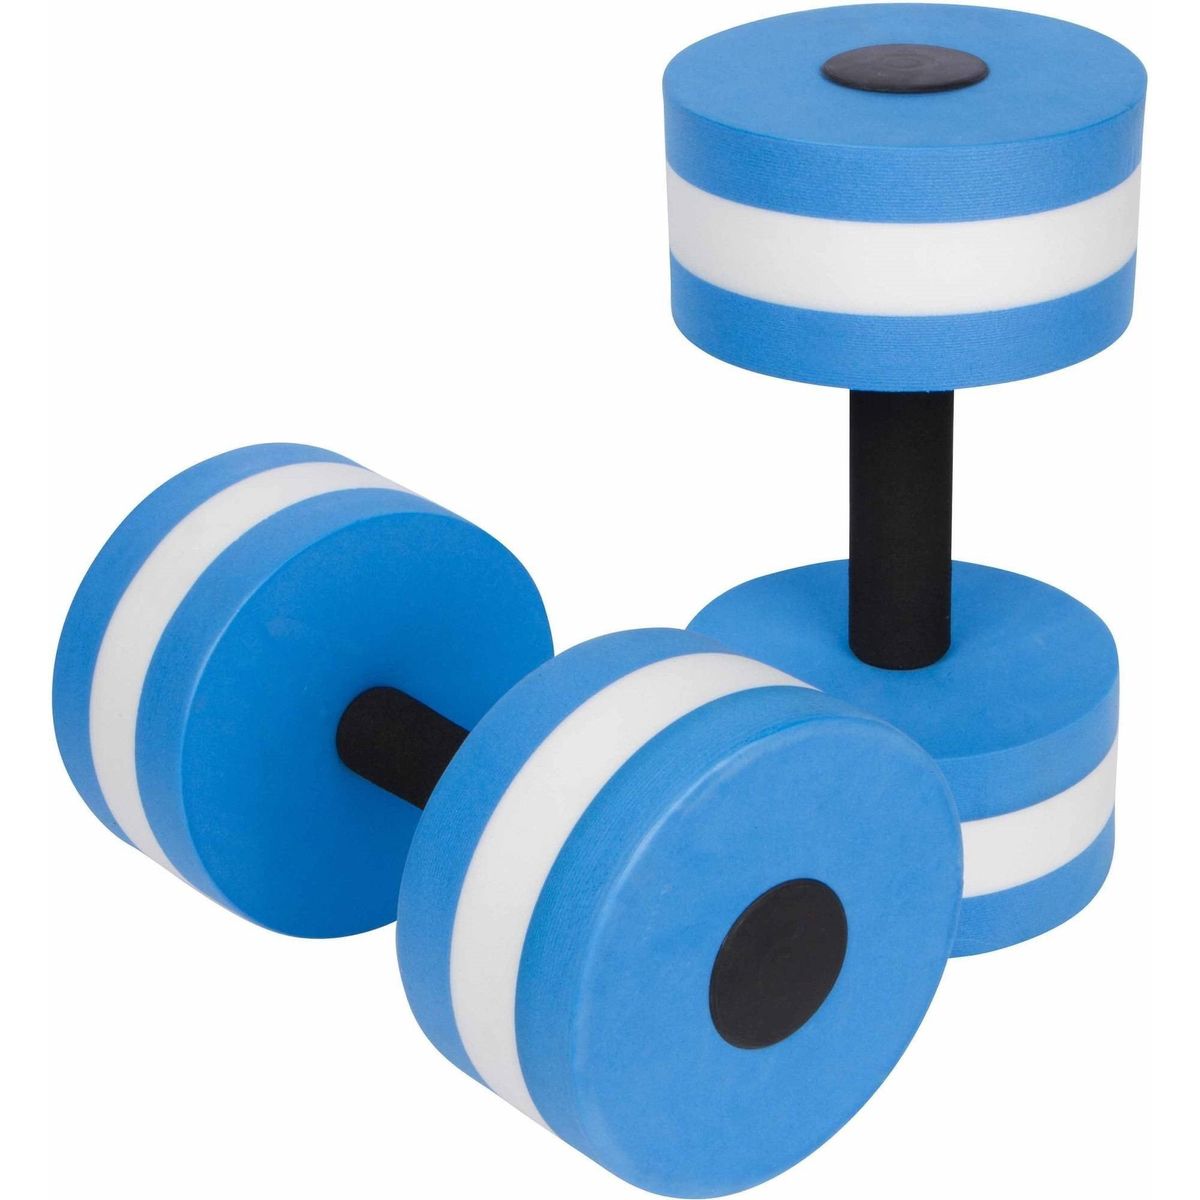 [送料無料] Trademark Innovations 水中エアロビクス用ダンベル、2個セット、ブルー [楽天海外通販] | Trademark Innovations Aquatic Exercise Dumbells For Water Aerobics, Set of Two, in Blue